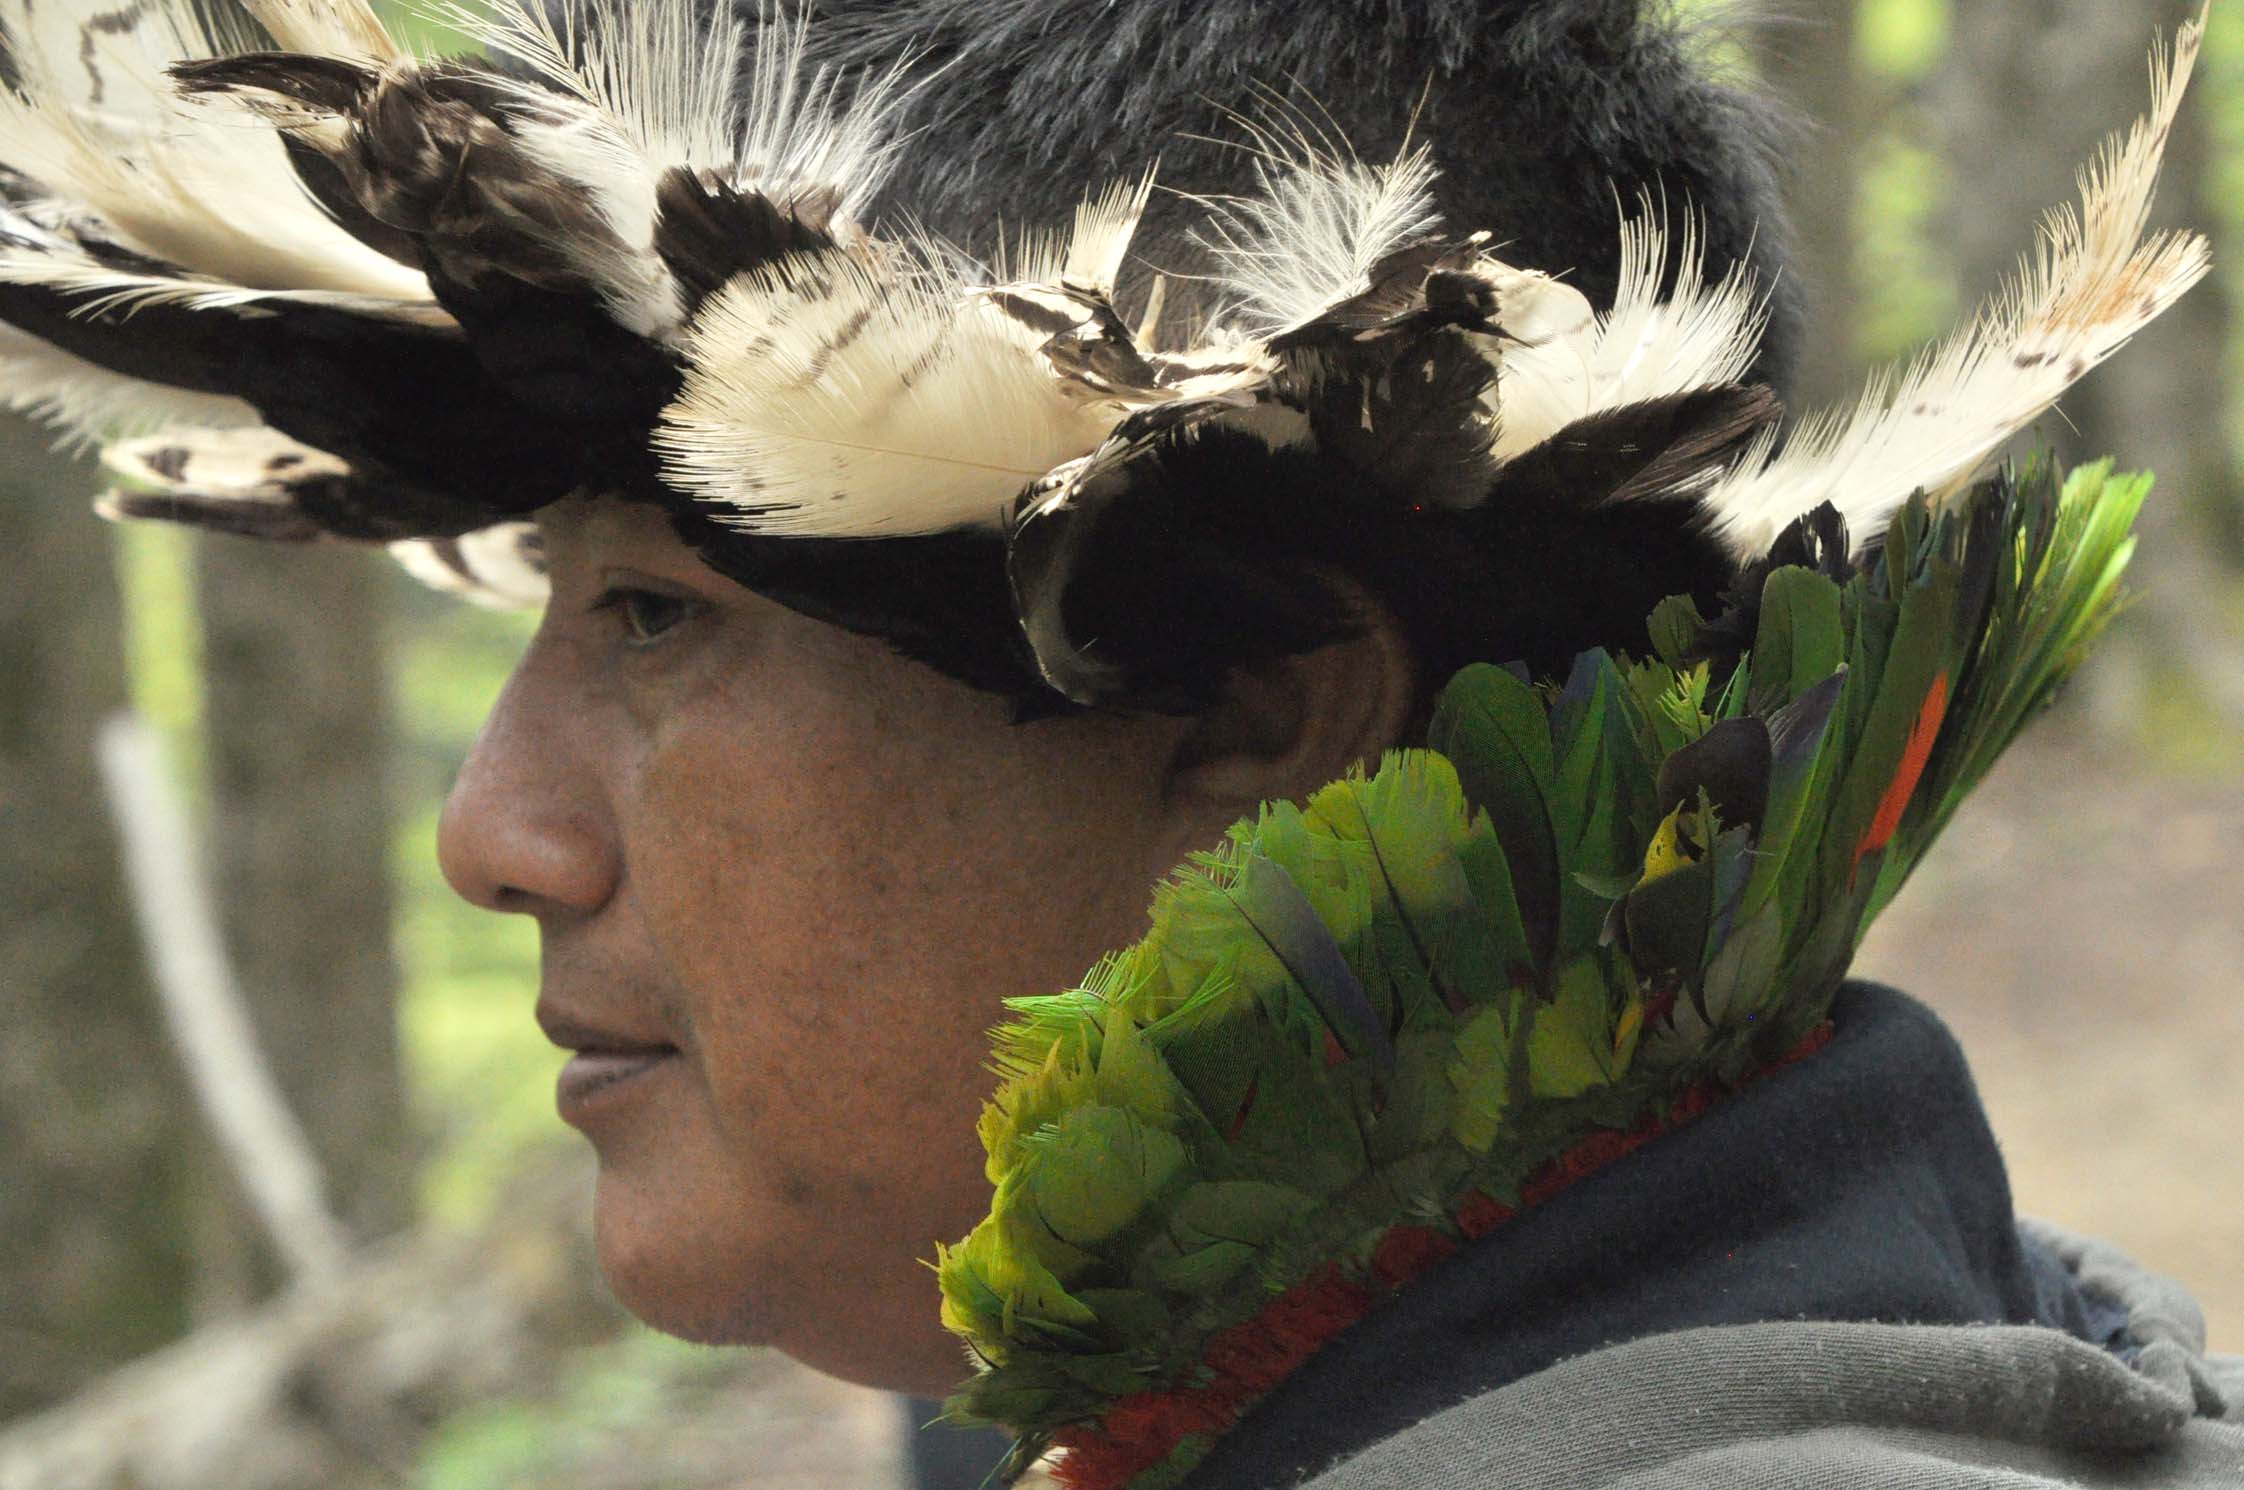 Foreste Casentinesi: sabato l’incontro con il leader indigeno Adriano Karipuna